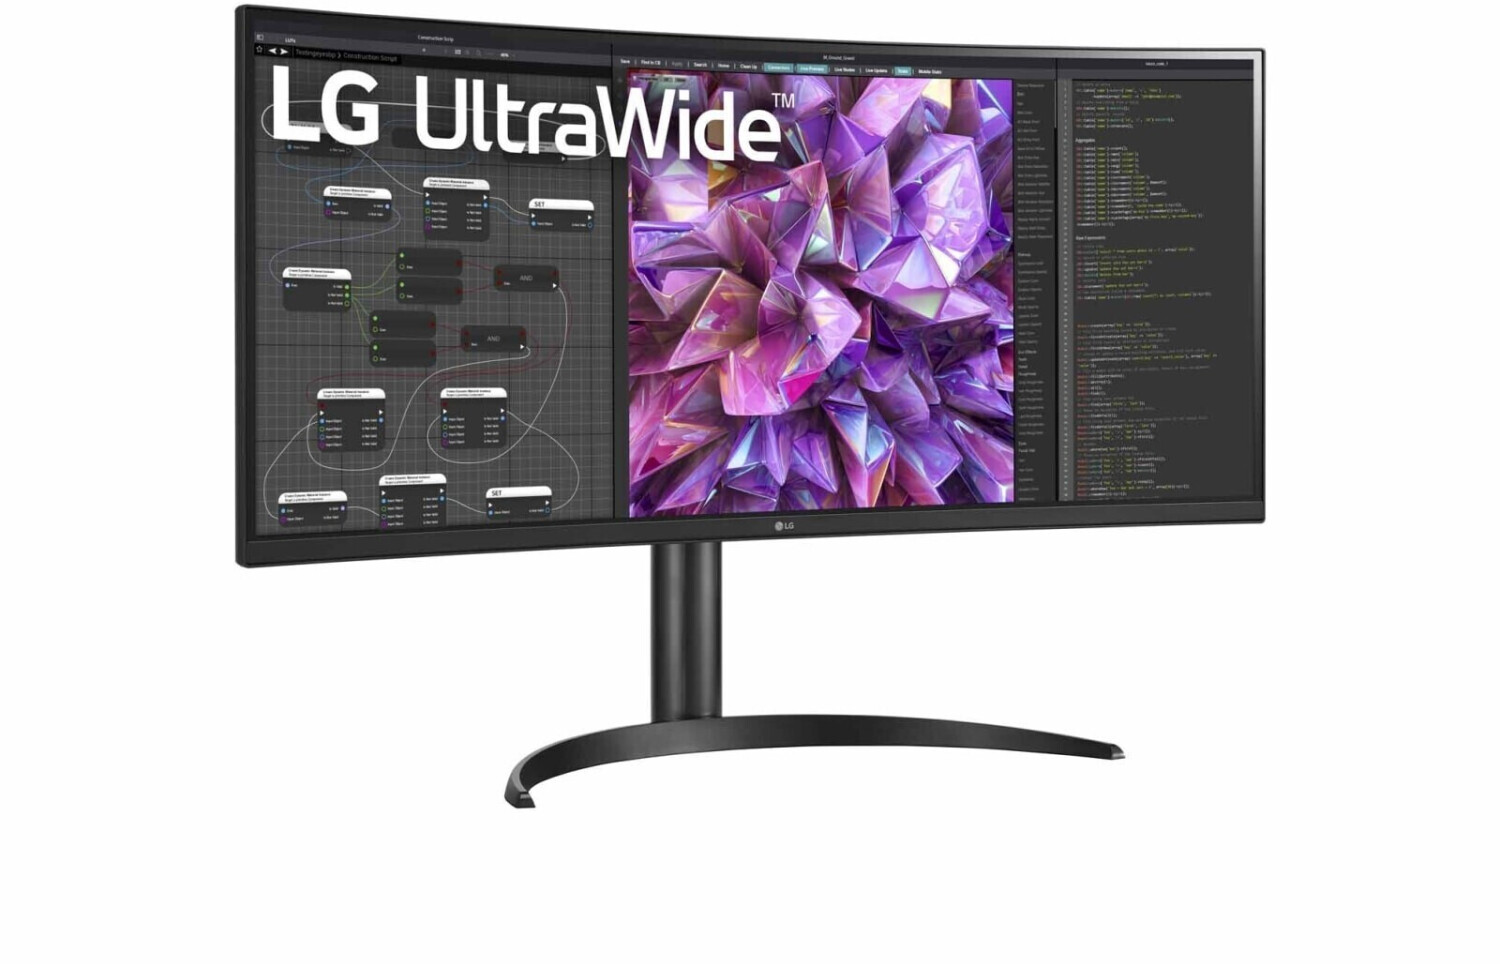 Las mejores ofertas en Monitores de computadora LG USB 2.0